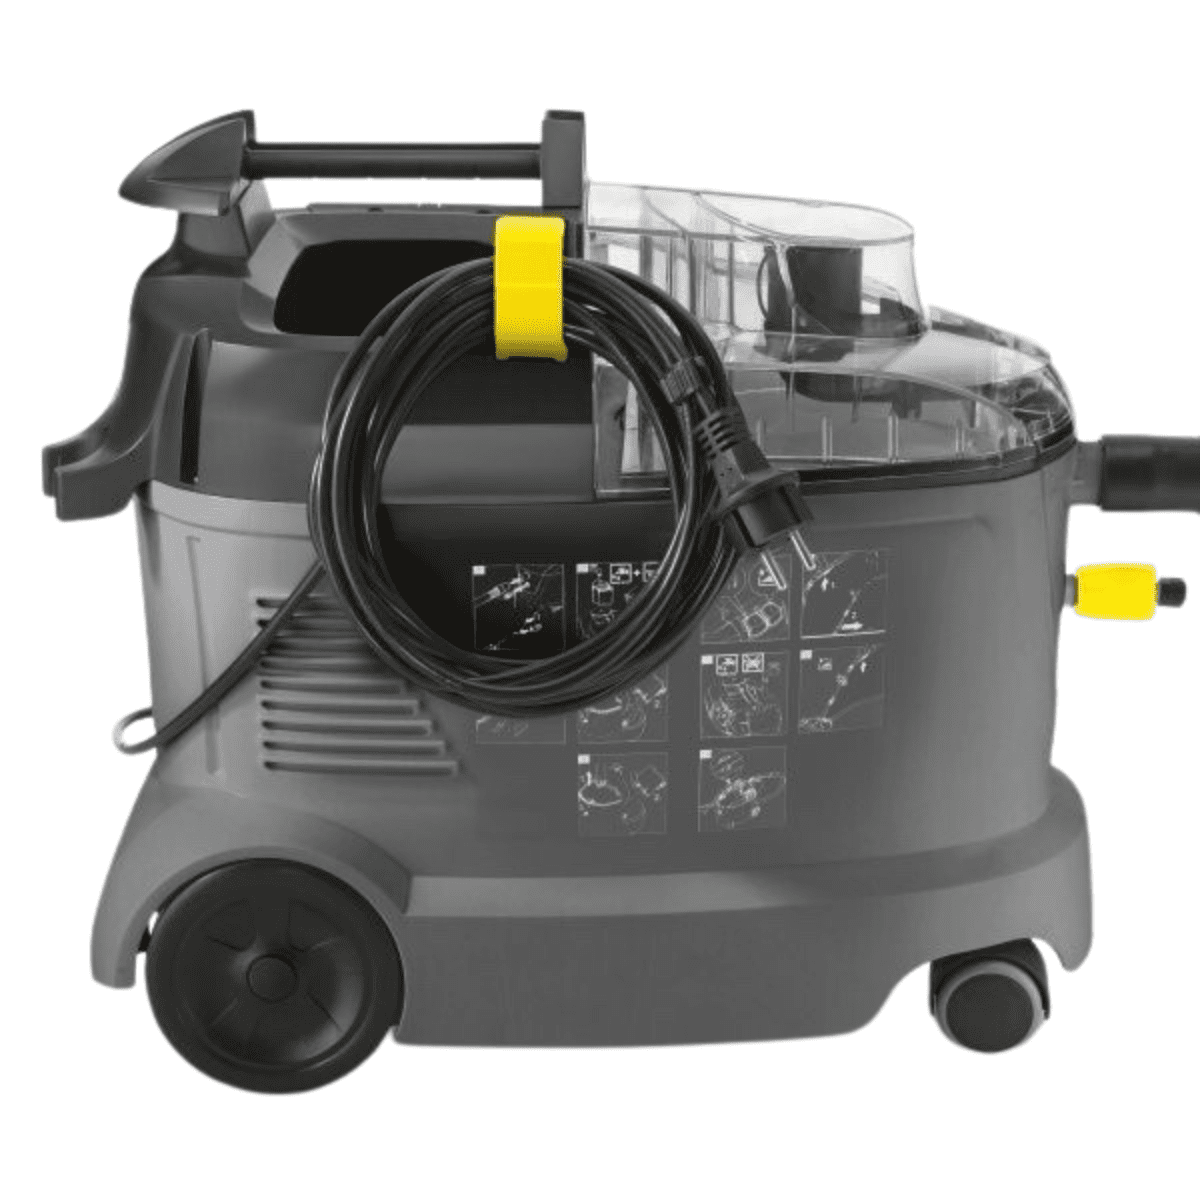 Kärcher - Lava-aspiradora PUZZI 8/1 es un potente equipo de limpieza y  aspiración combinadas en la linea profesional. Este equipo puede utilizarse  de forma específica para la limpieza de muebles, tapicerías o